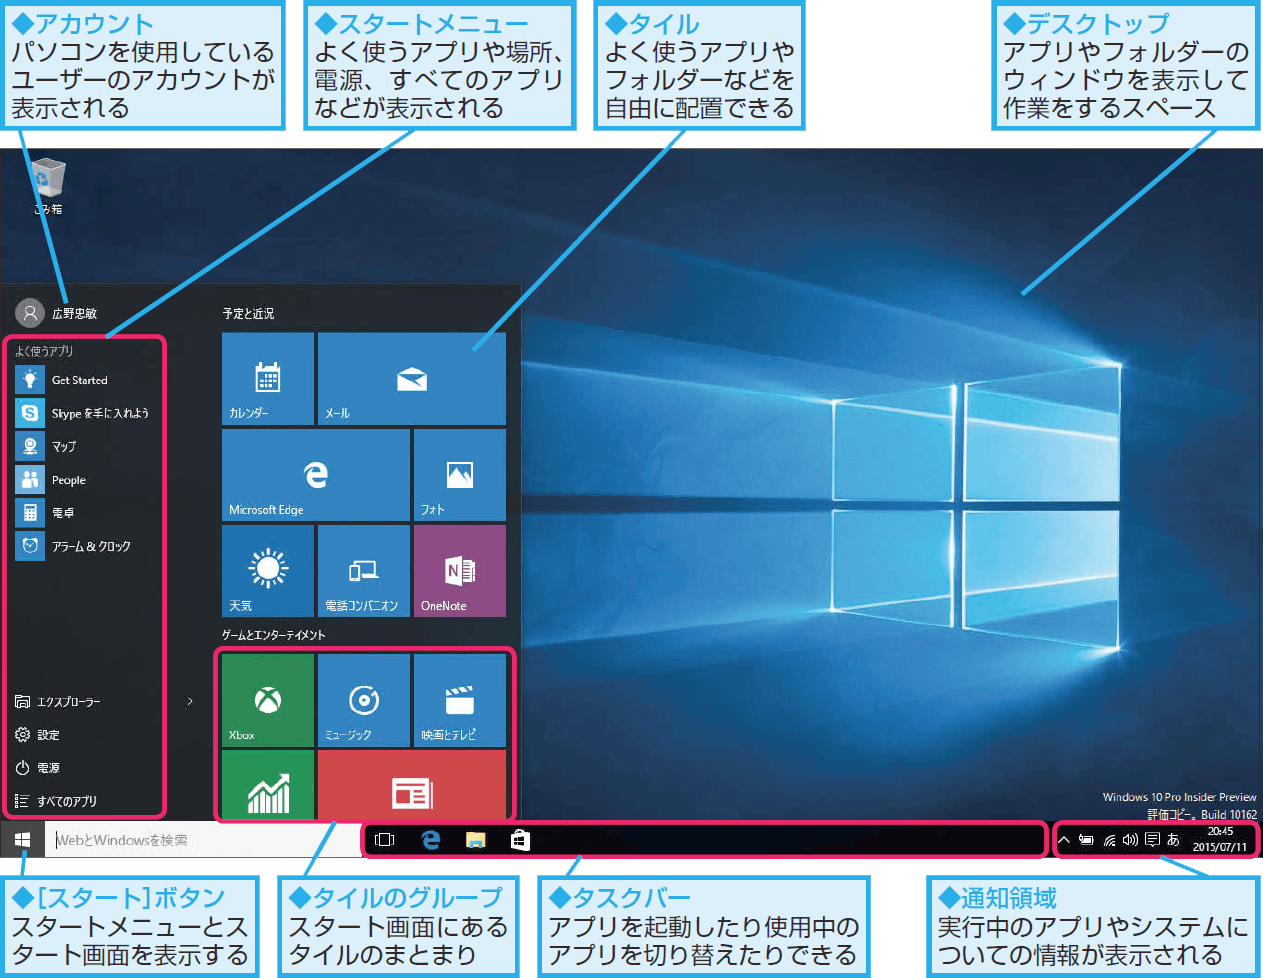 Windows 10のデスクトップについて知ろう できるネット